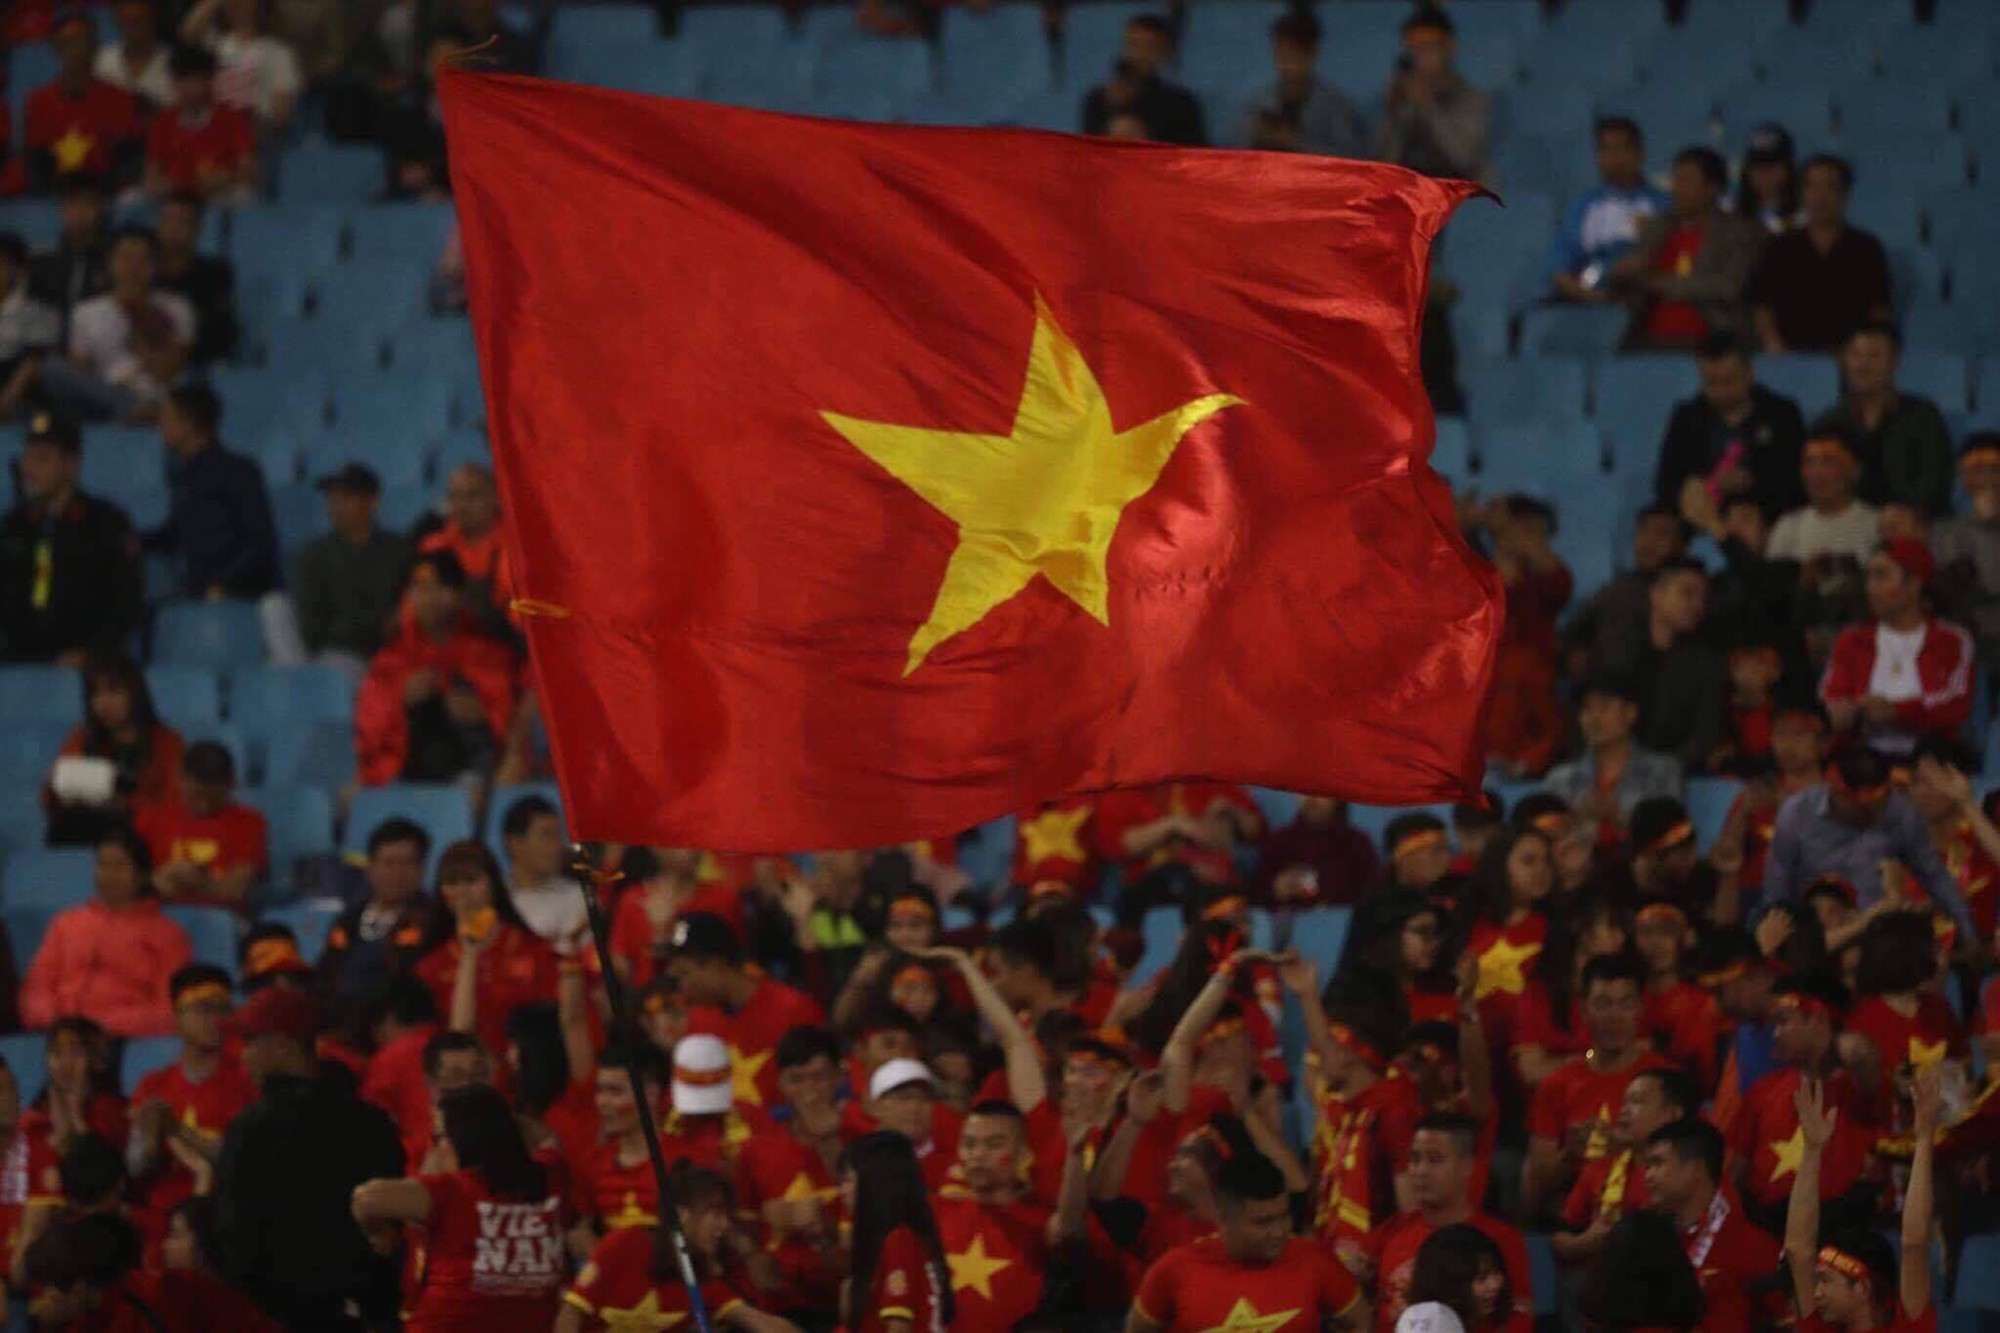 Bóng đá Việt Nam: Hình ảnh về bóng đá Việt Nam sẽ khiến bạn đắm chìm trong không khí sôi động của môn thể thao vua. Cùng theo dõi hình ảnh những cầu thủ Việt Nam tận tình dành toàn bộ sức lực để đưa đội tuyển lên đỉnh vinh quang.